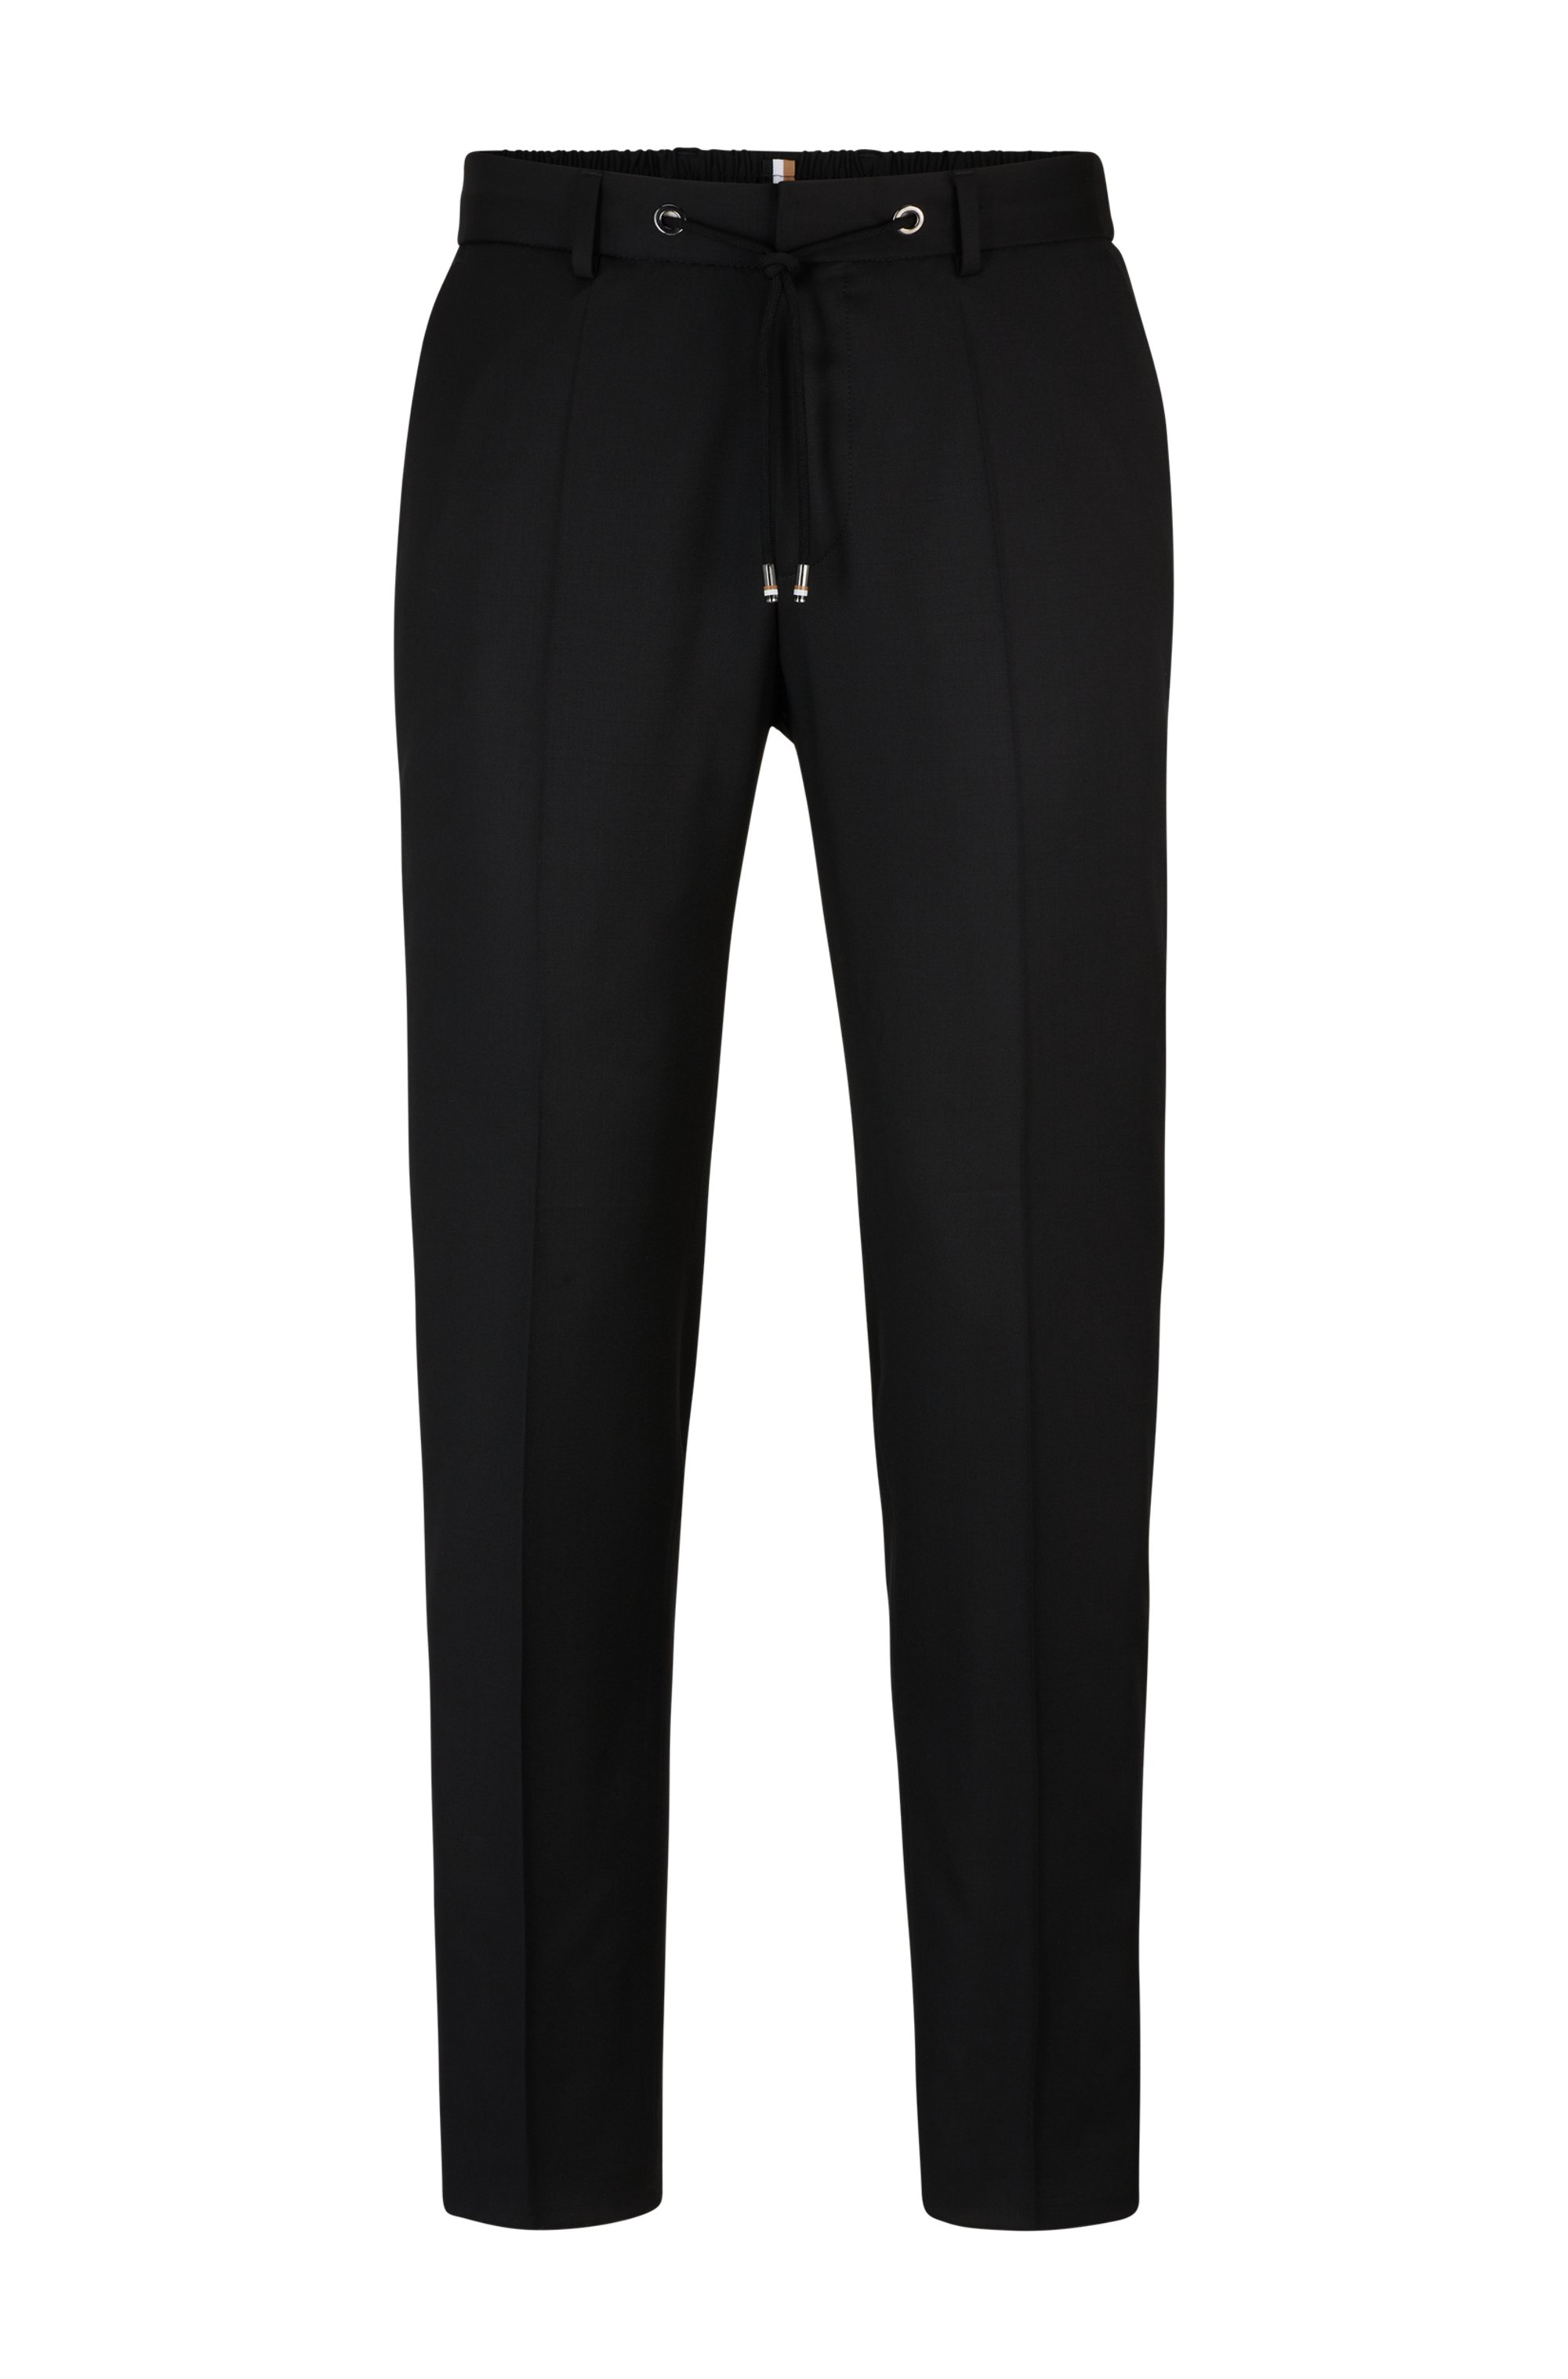 Pantalones con cordón en sarga de lana virgen, Negro